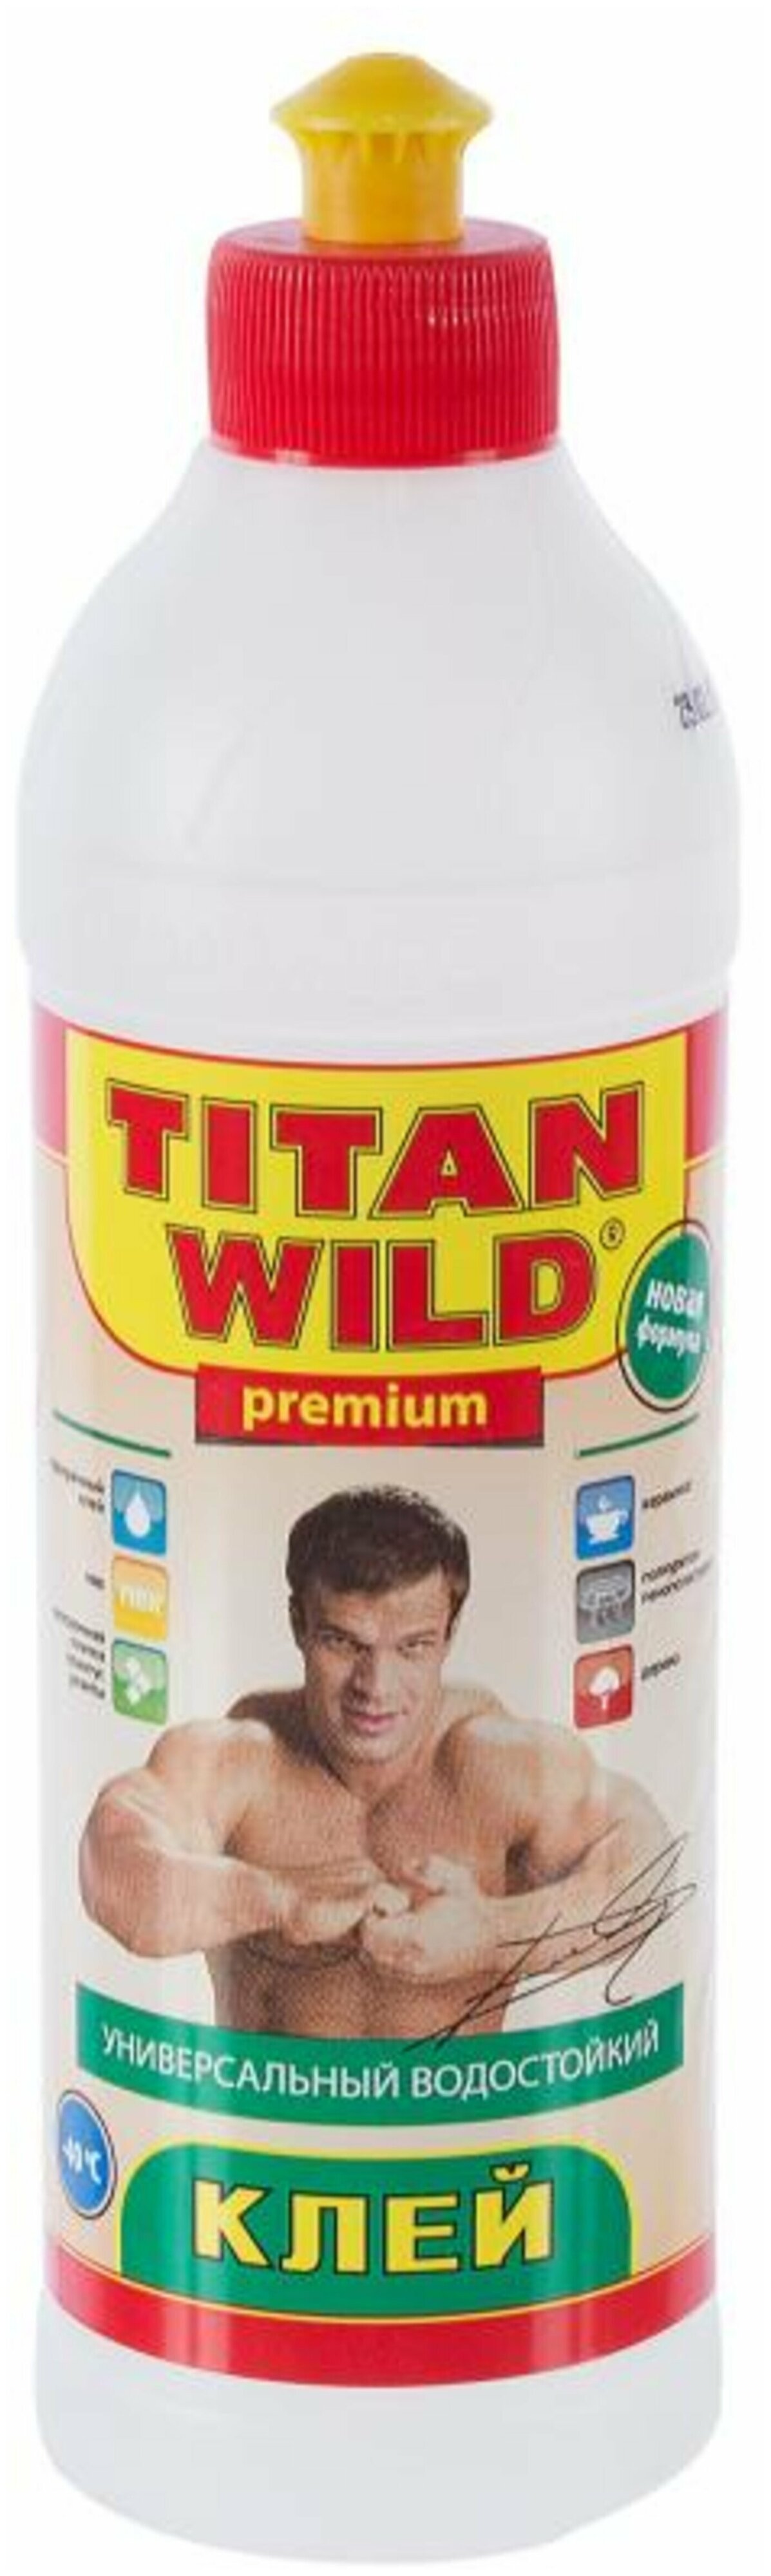 Клей полимерный универсальный Titan Wild, 500мл (Титан)